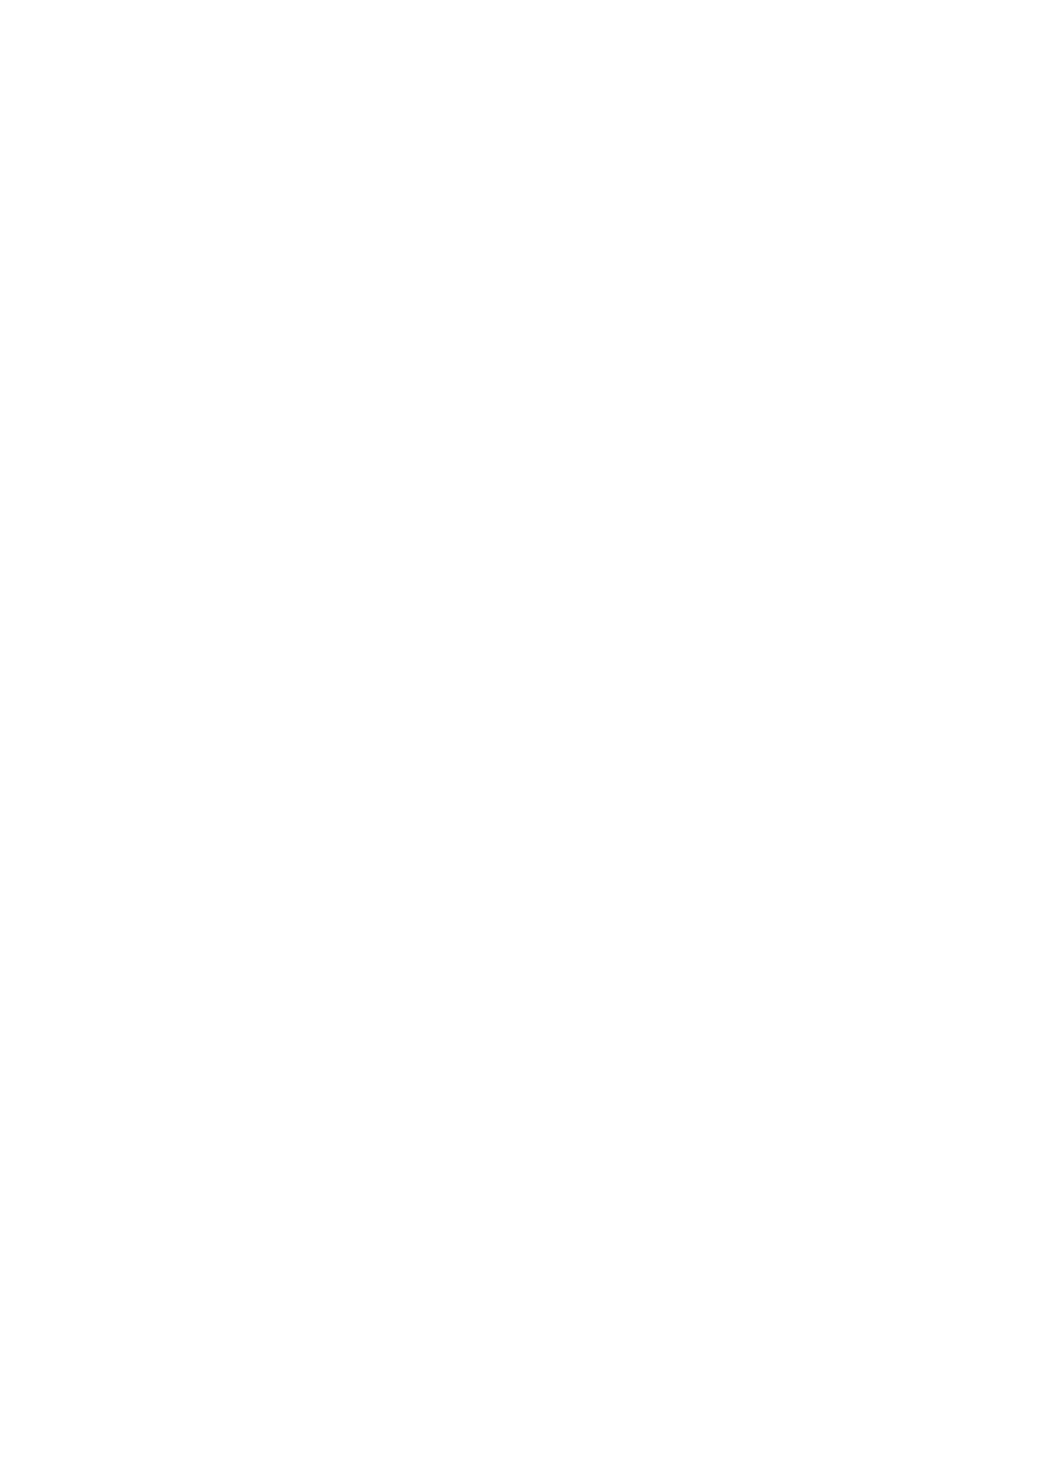 [有限の須田 (無限の須田時計)] 影の薔薇 Schattenrose (オクトパストラベラー) [DL版]